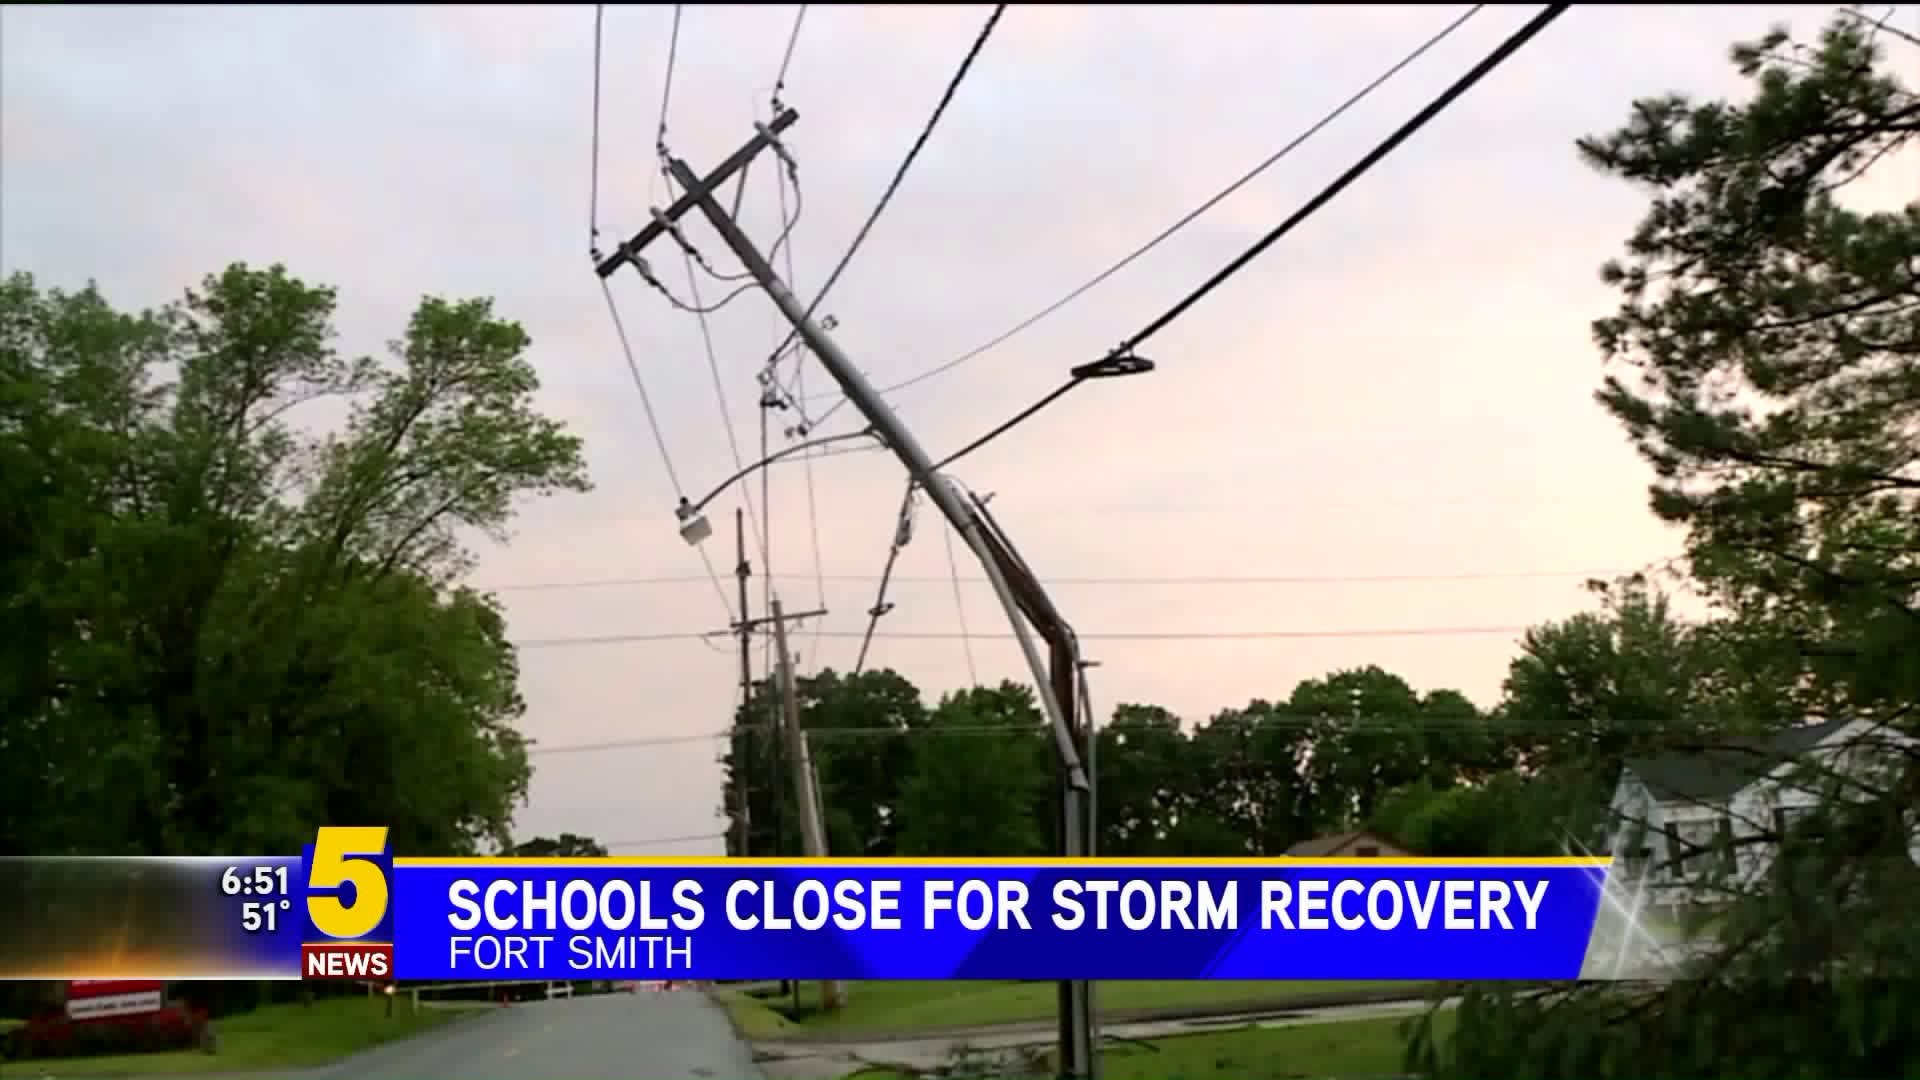 Tornadoes Confirmed; FS Schools Closed